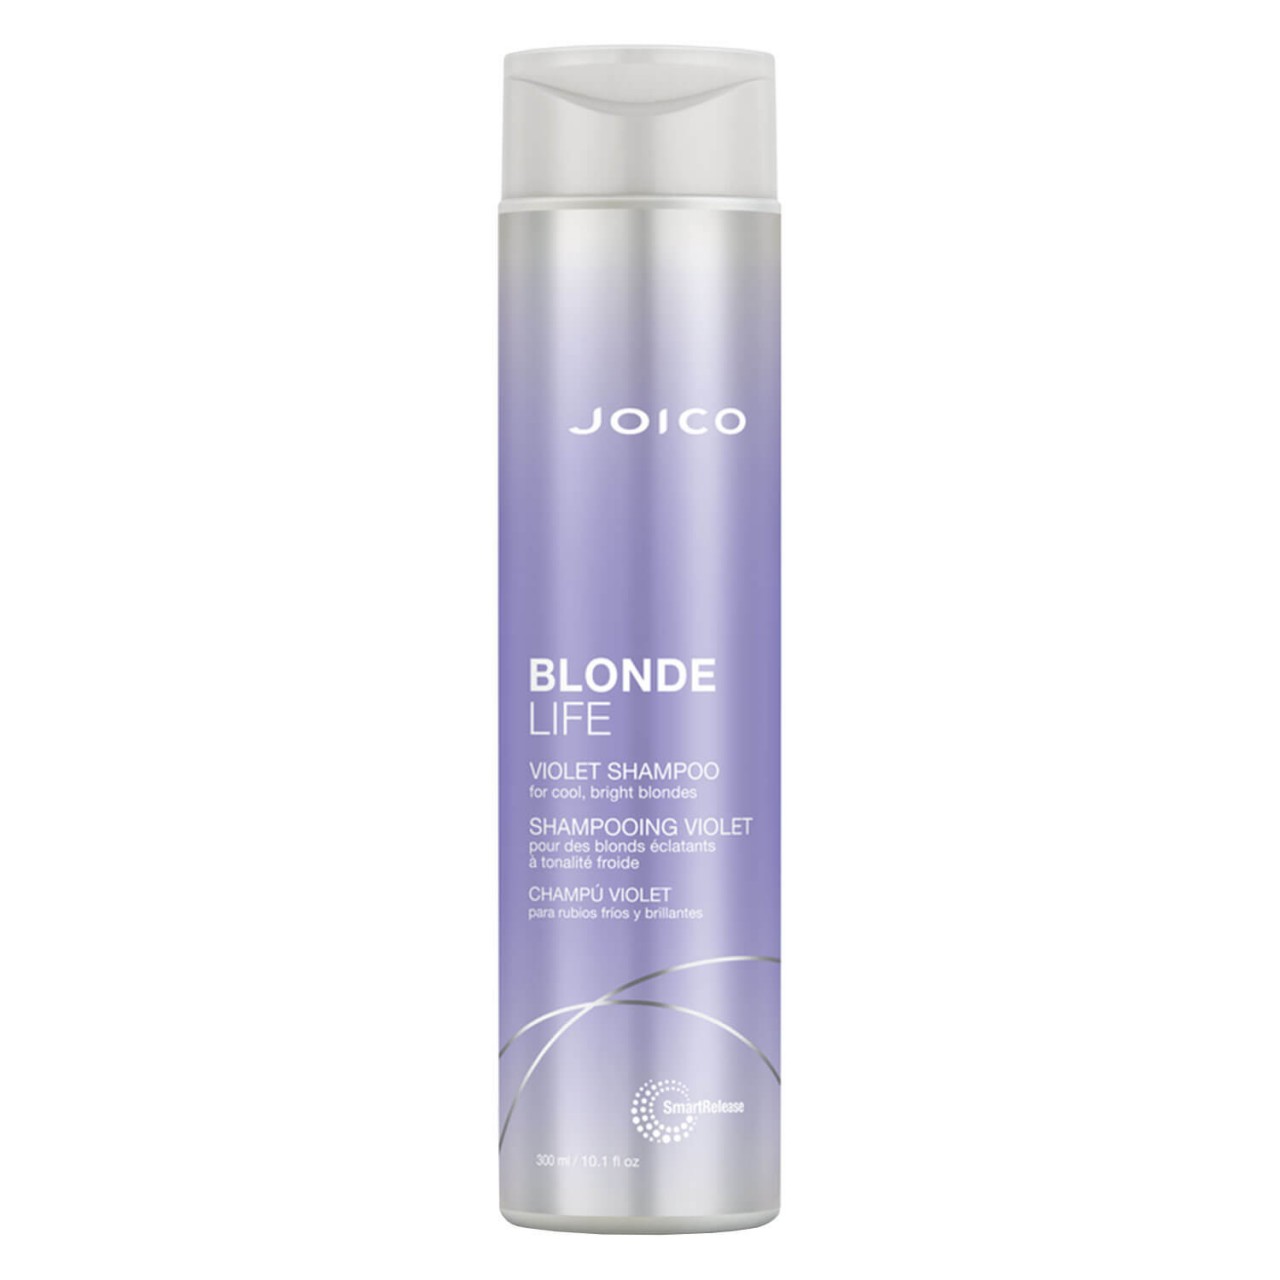 Blonde Life - Violet Shampoo von Joico